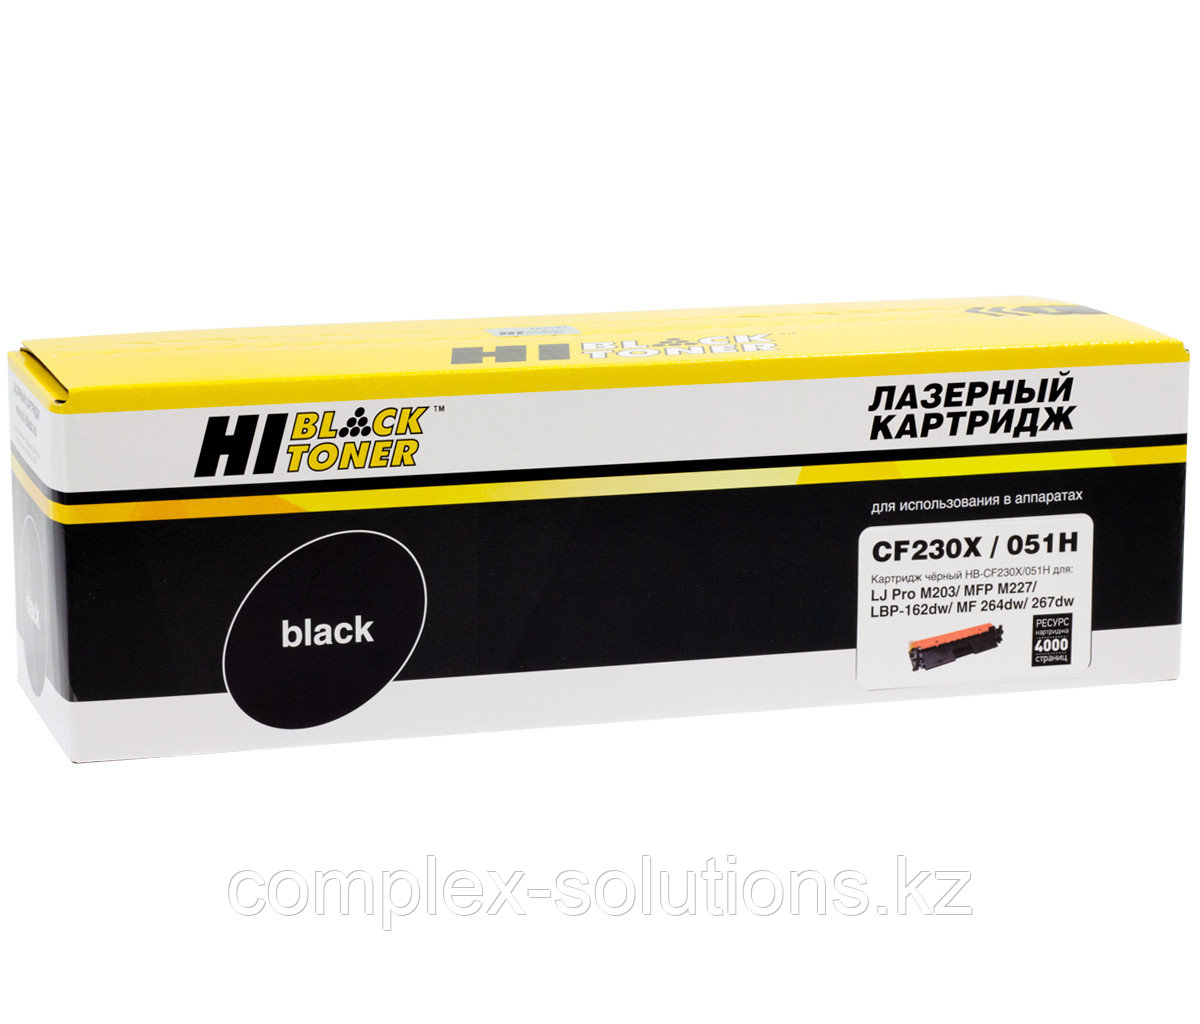 Тонер картридж Hi-Black [CF230X | 051H] для H-P LJ Pro M203 | MFP M227 | LBP162dw | MF 264dw | 267dw, 4K |